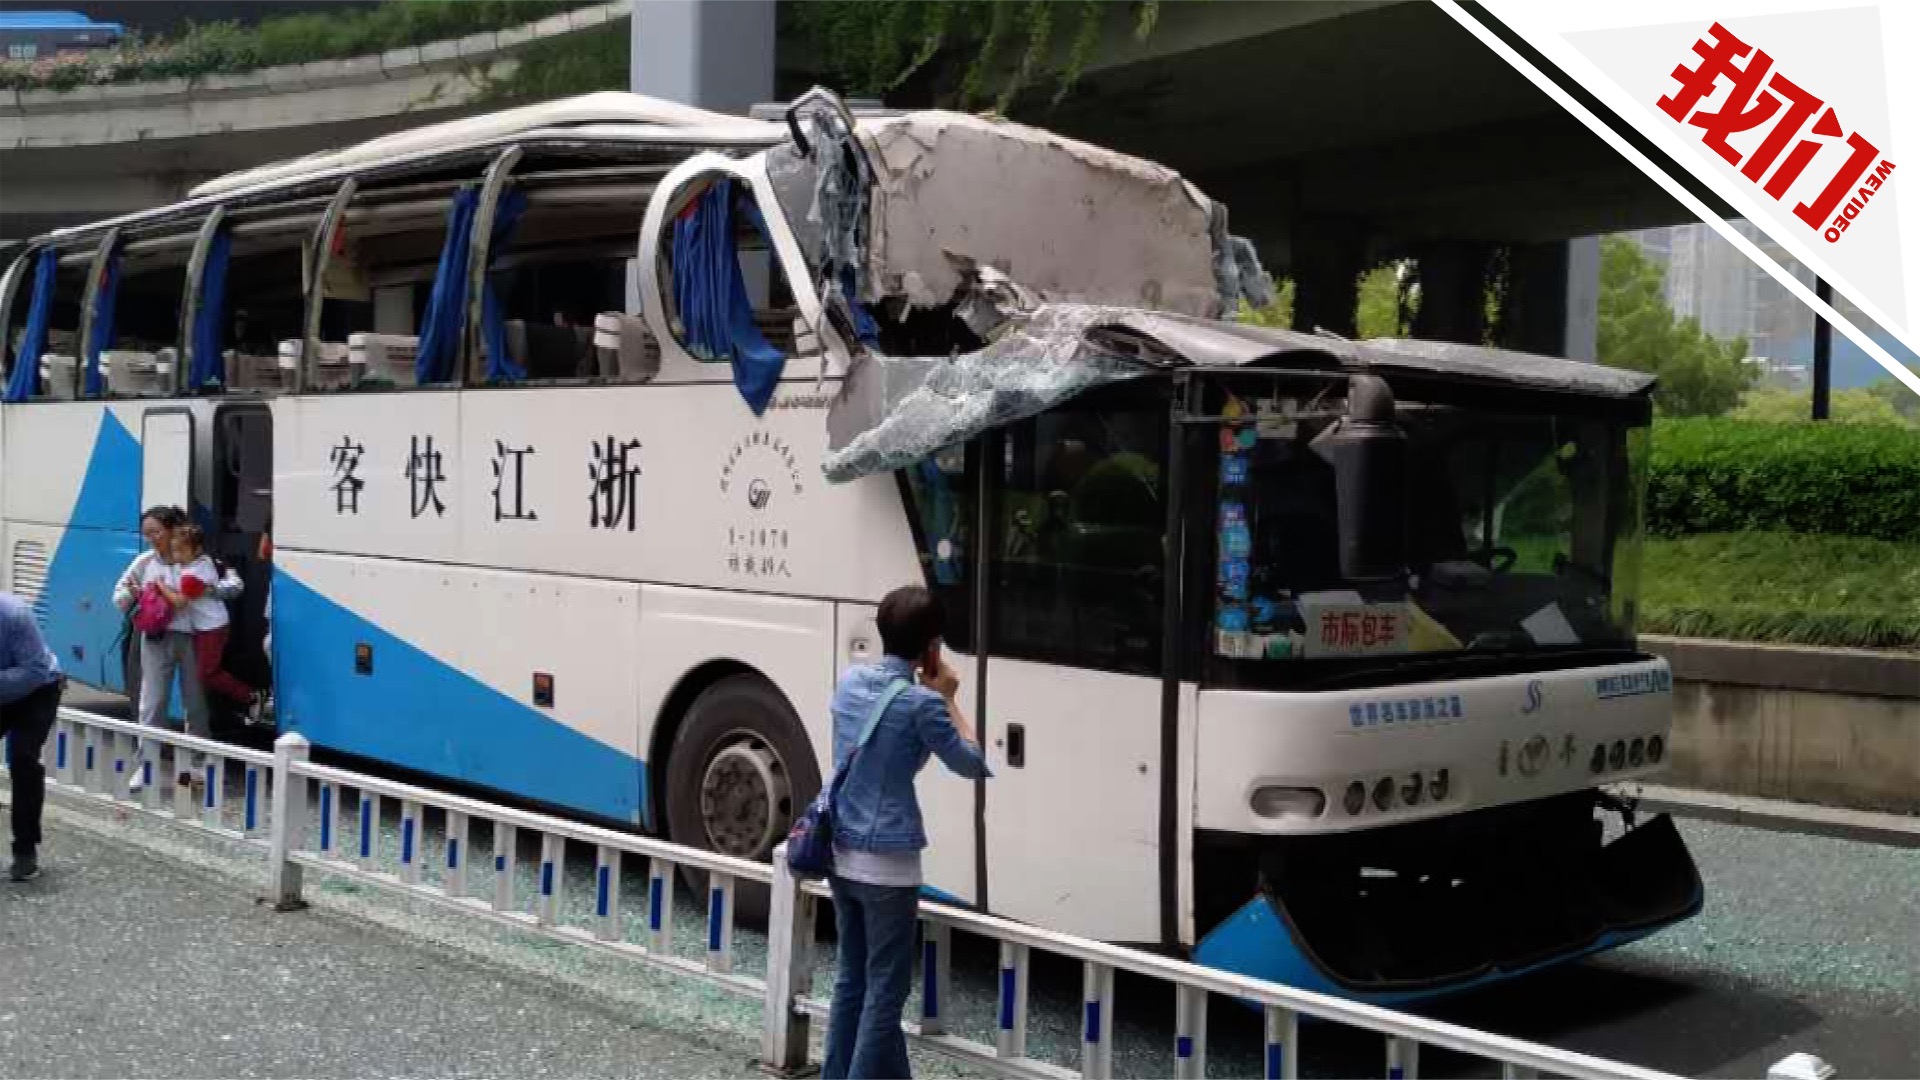 广西旅游大巴撞限高架致1死6伤 近年来类似事故频发-荆楚网-湖北日报网